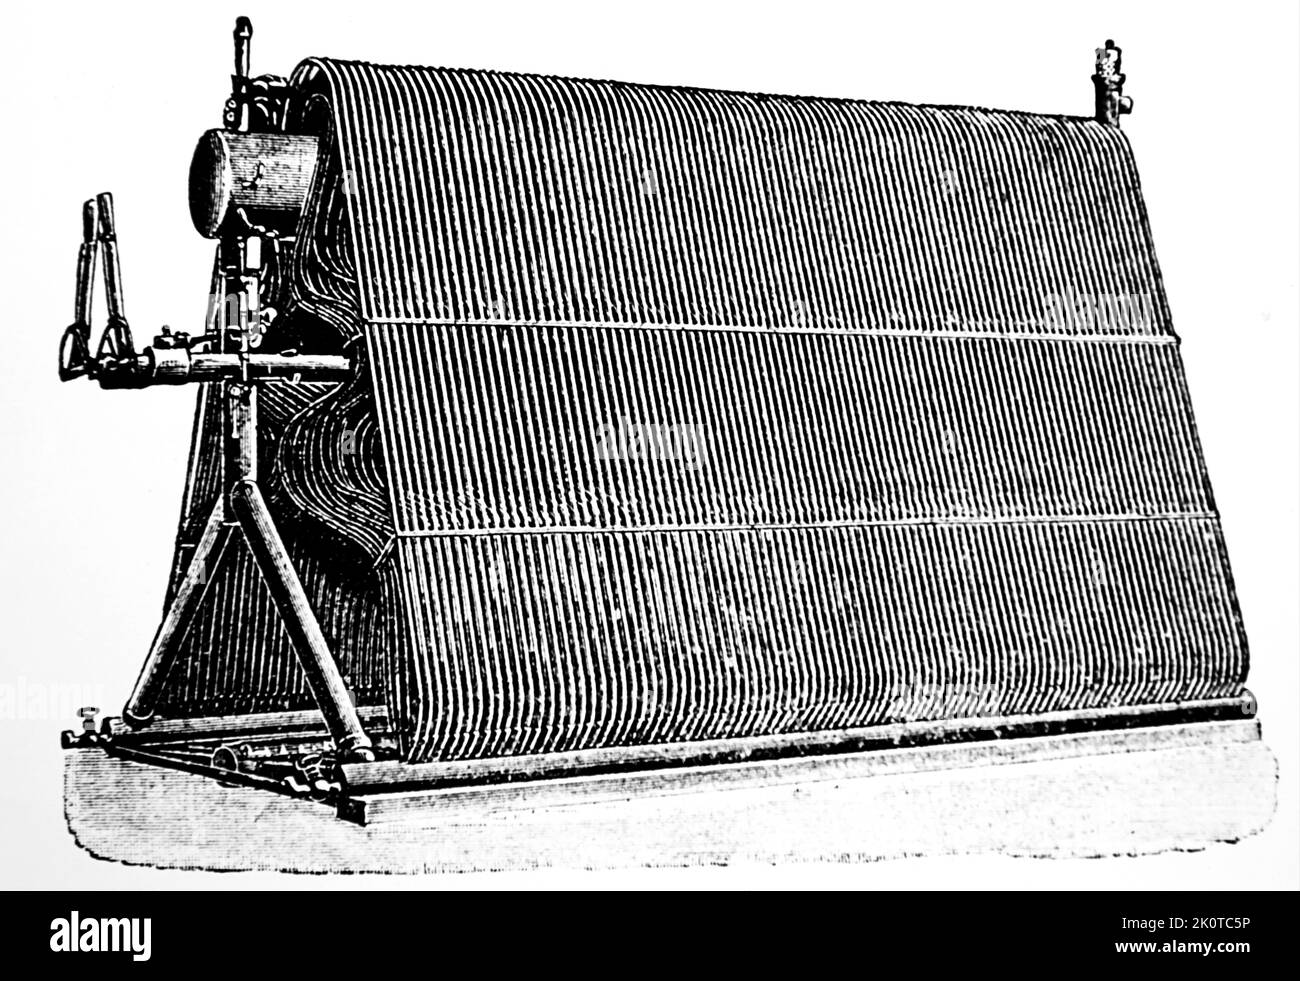 La chaudière à tube d'eau de Hiram Maxim de sa machine volante. Hiram Maxim (1840-1916) inventeur britannique. Daté du 19th siècle Banque D'Images